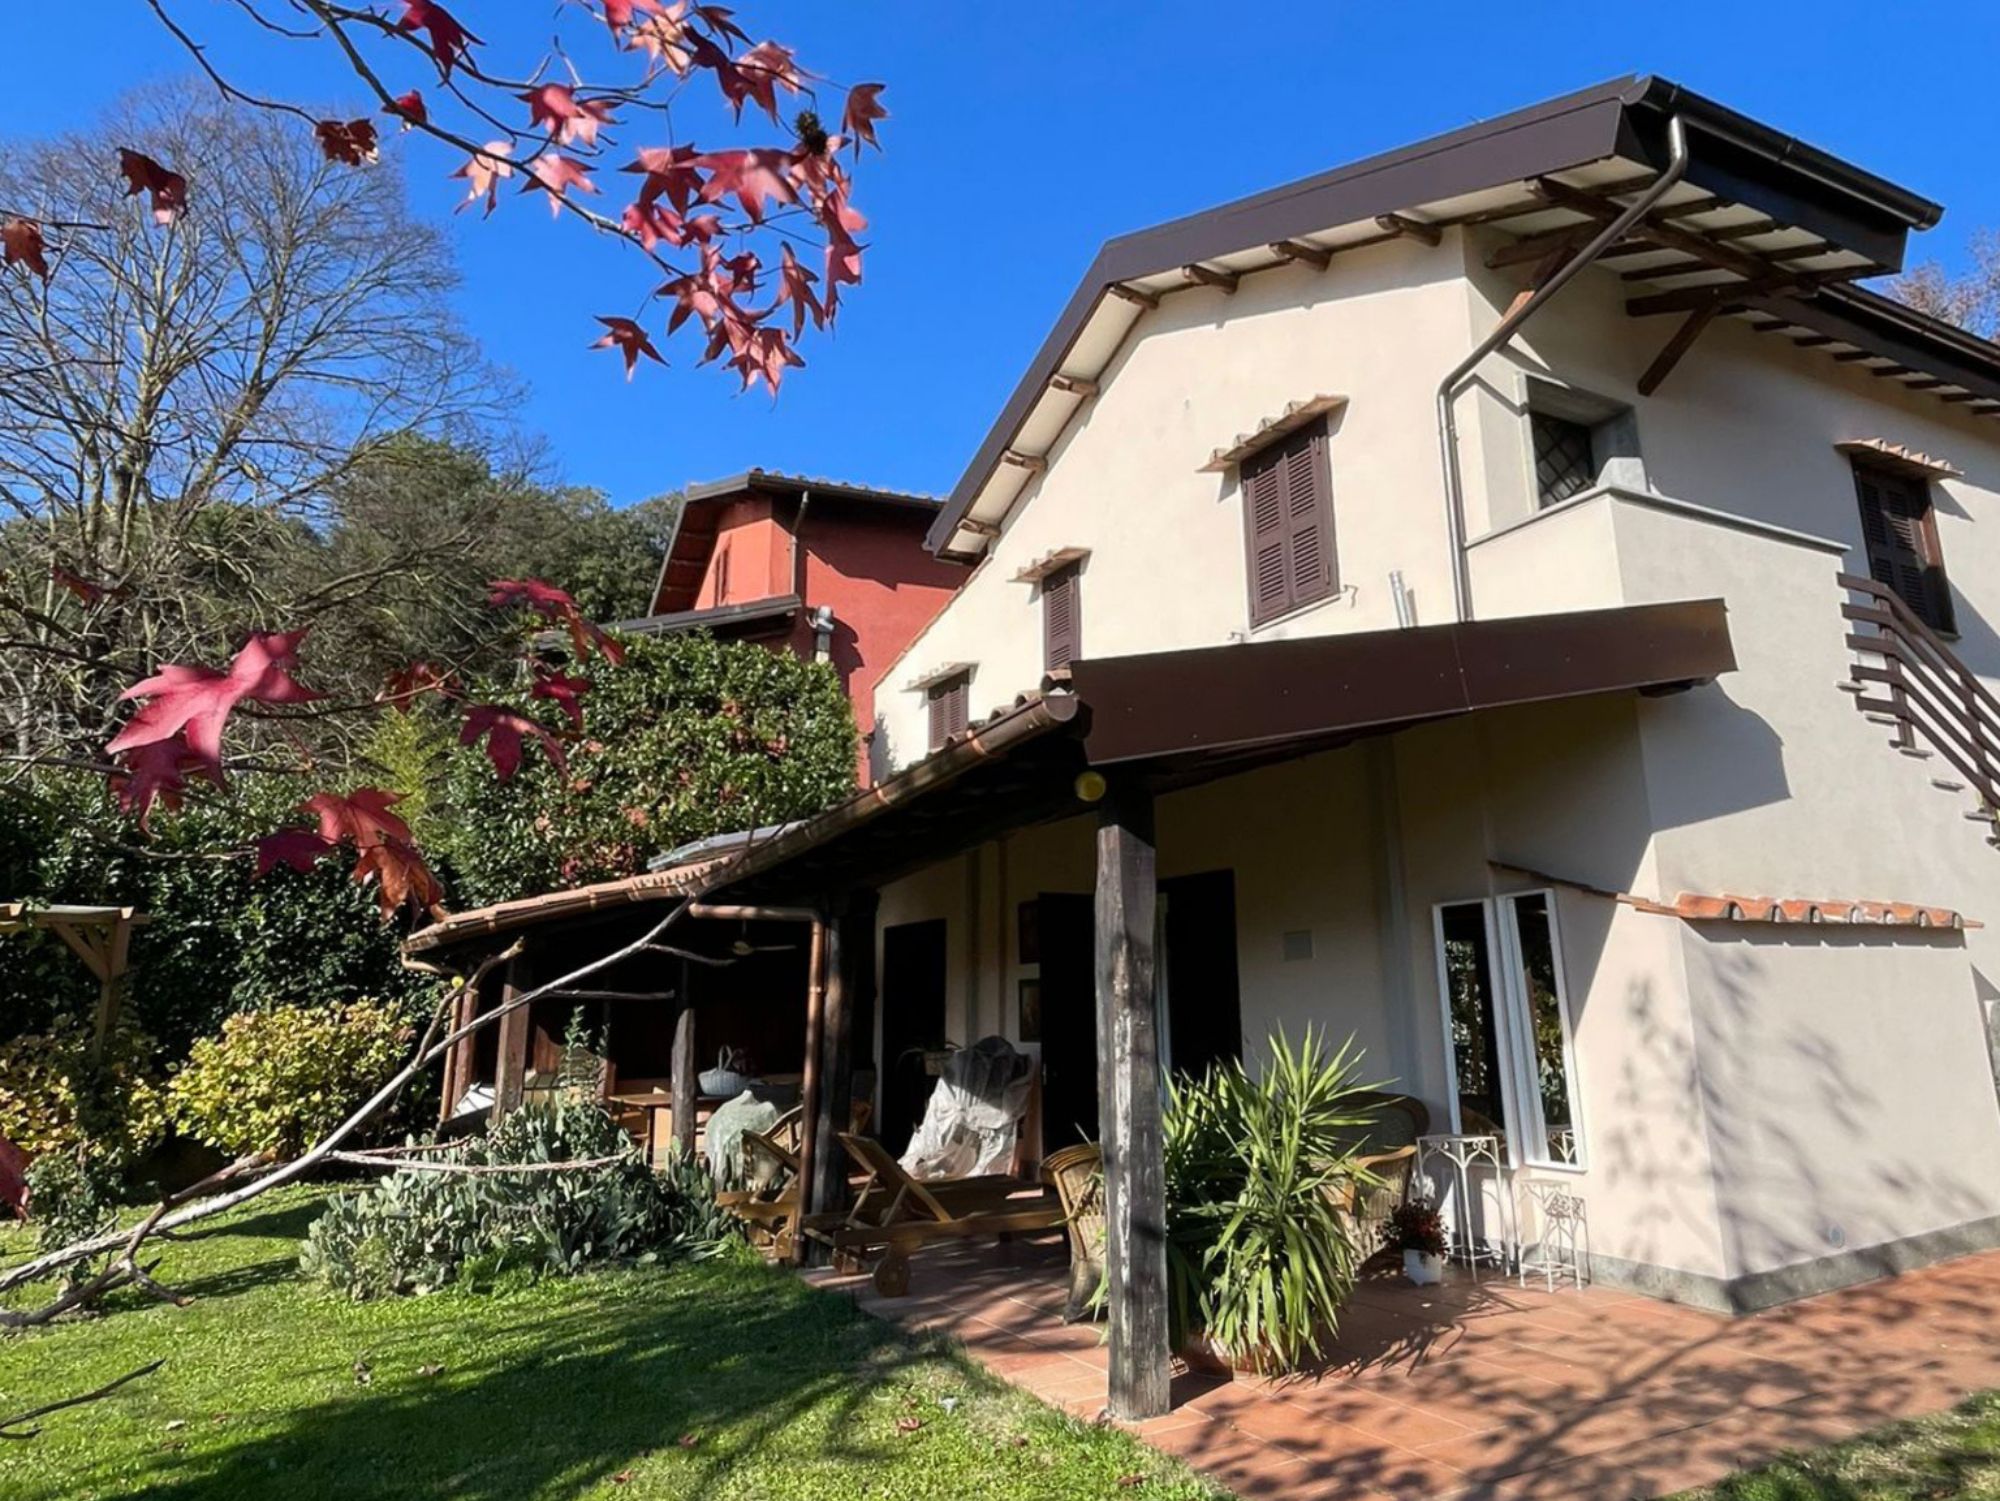 Villa a Zagarolo (RM) - Intervento di miglioramento sismico e di contenimento energetico